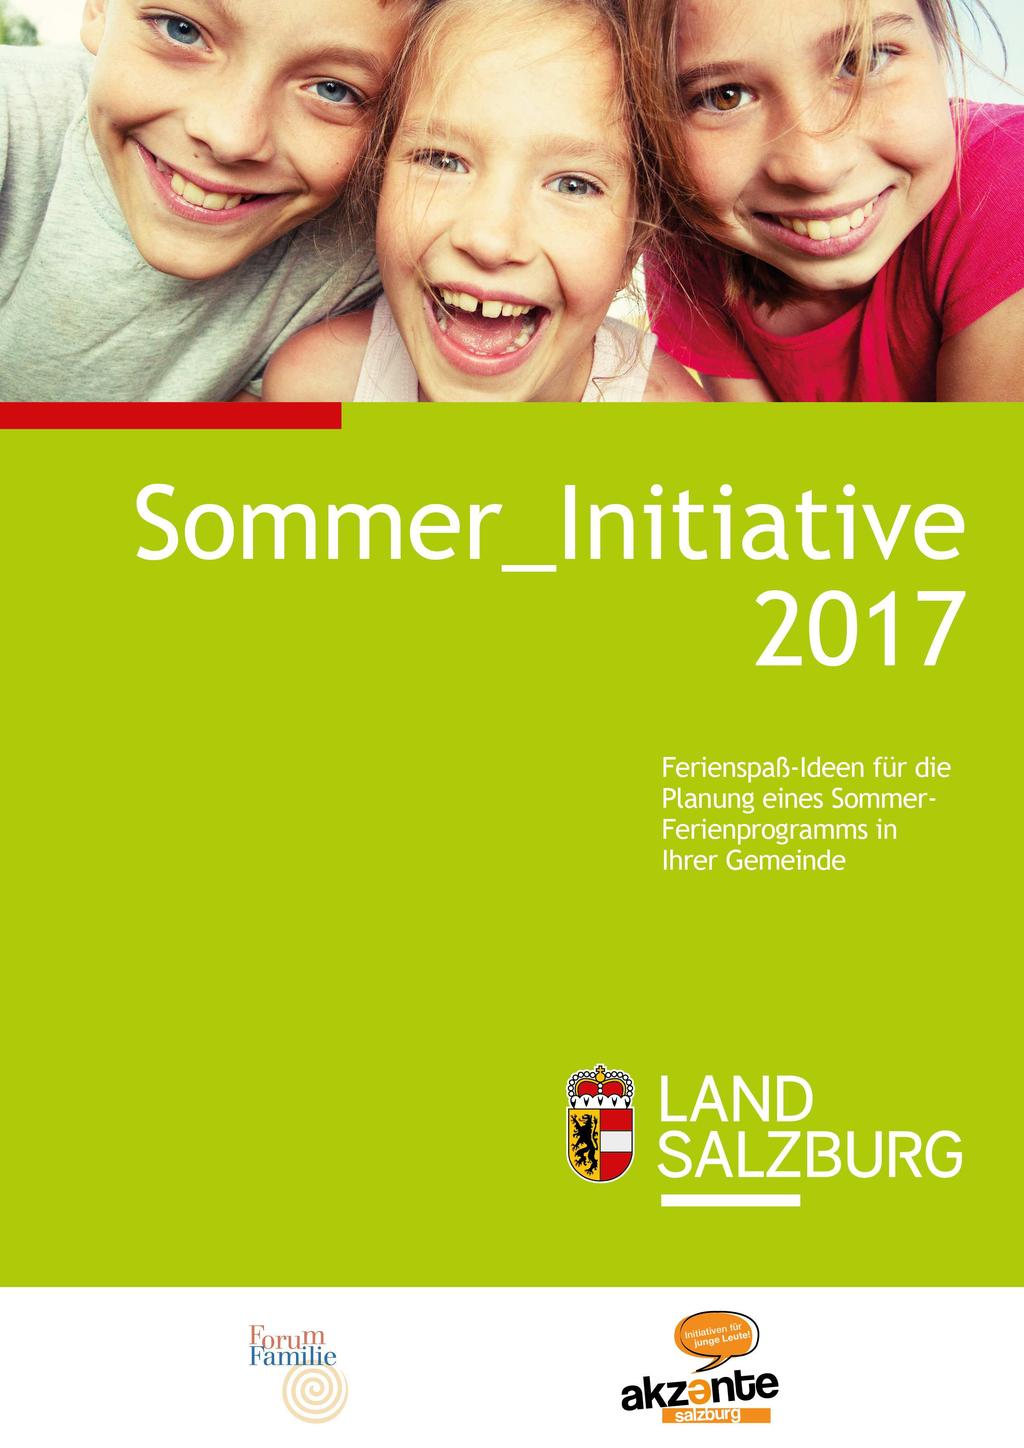 Seite 3 von 8 3. Sommer_Initiative 2017 online Ferienprogramm-Planungshilfe für Gemeinden Sommer, Ferien und ganz viel Freizeit!